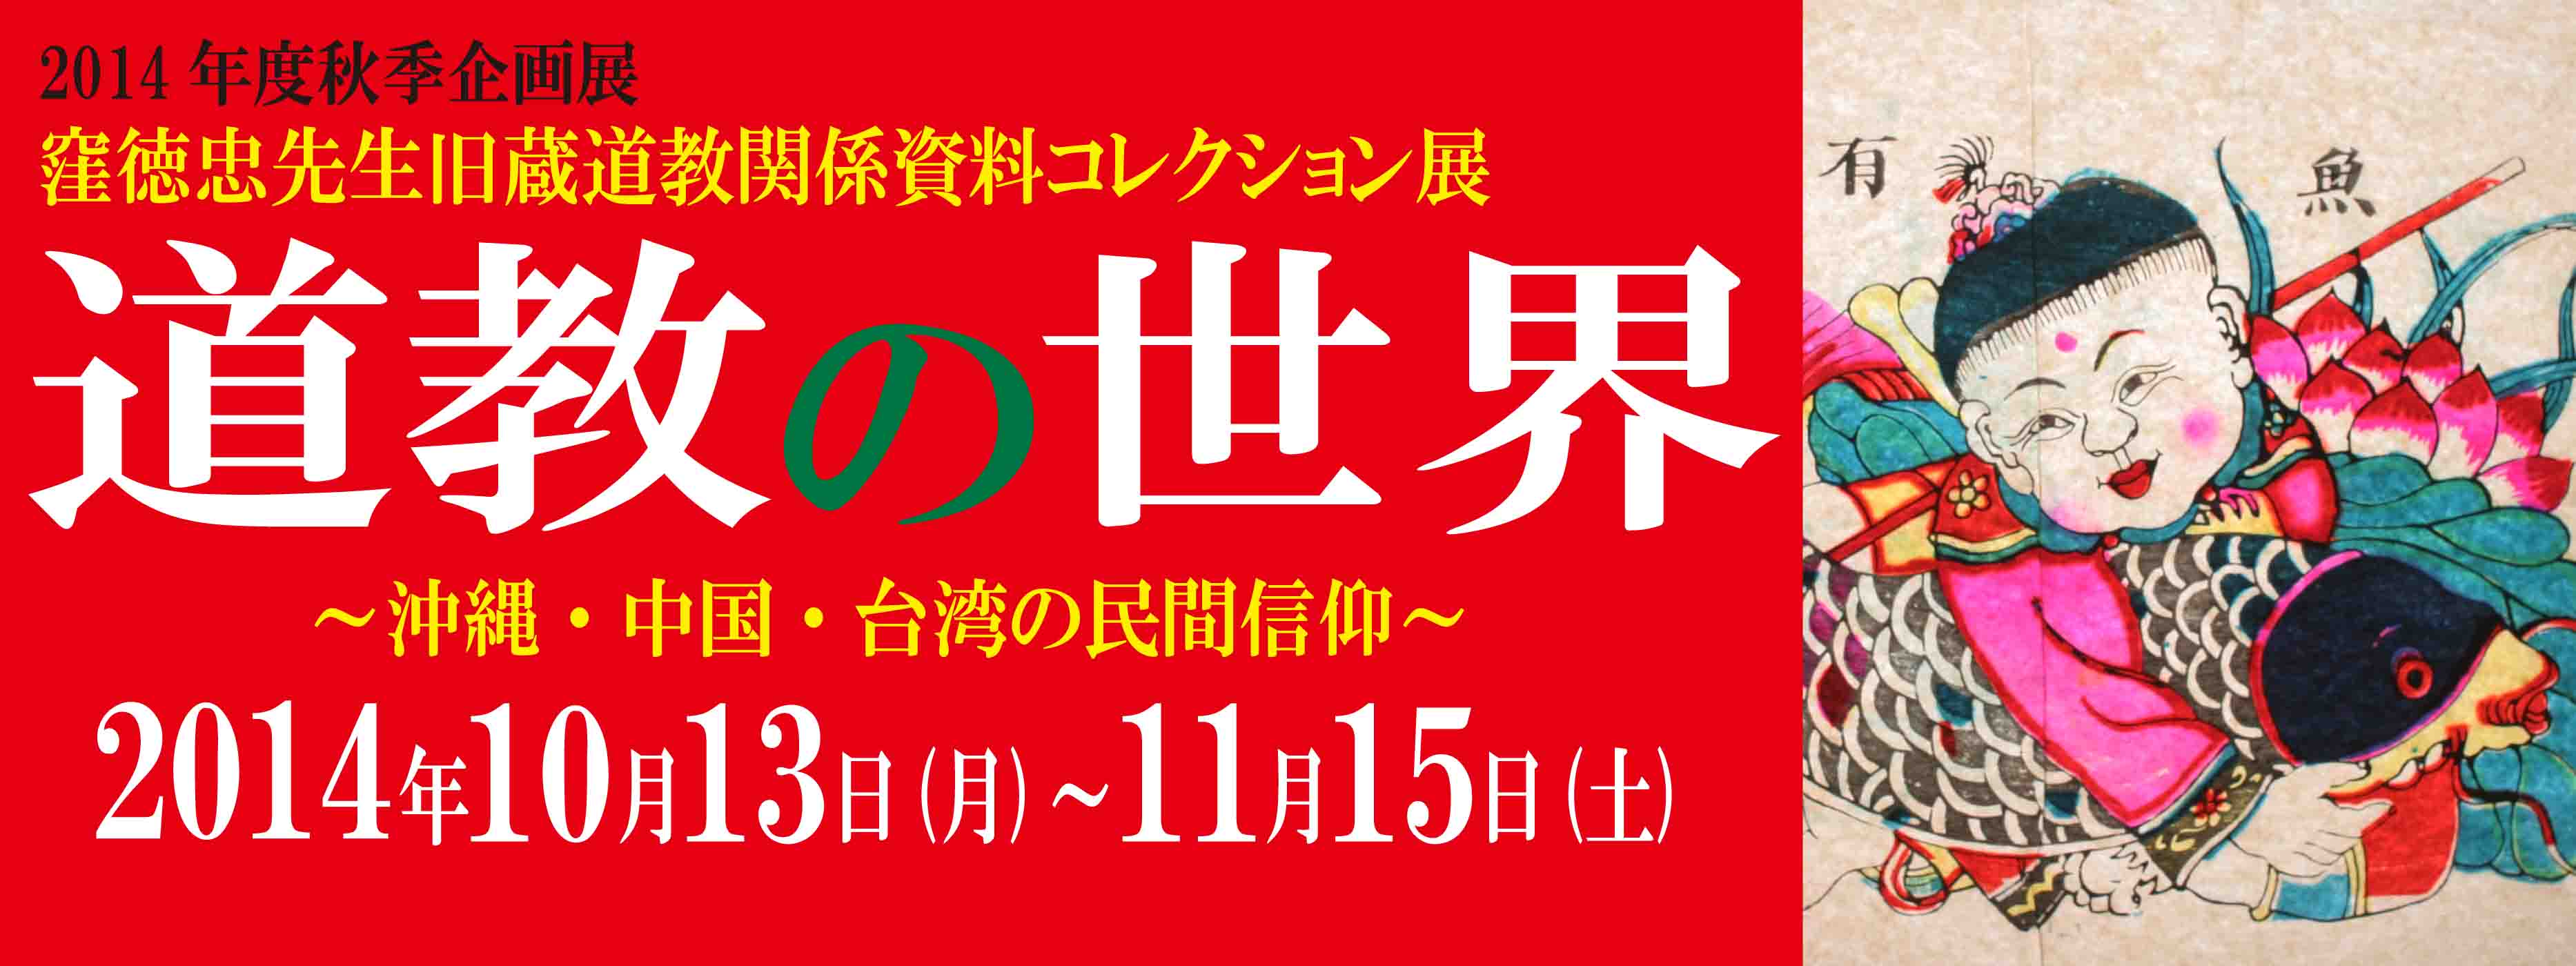 kikakuten_2014_dokyo_banner